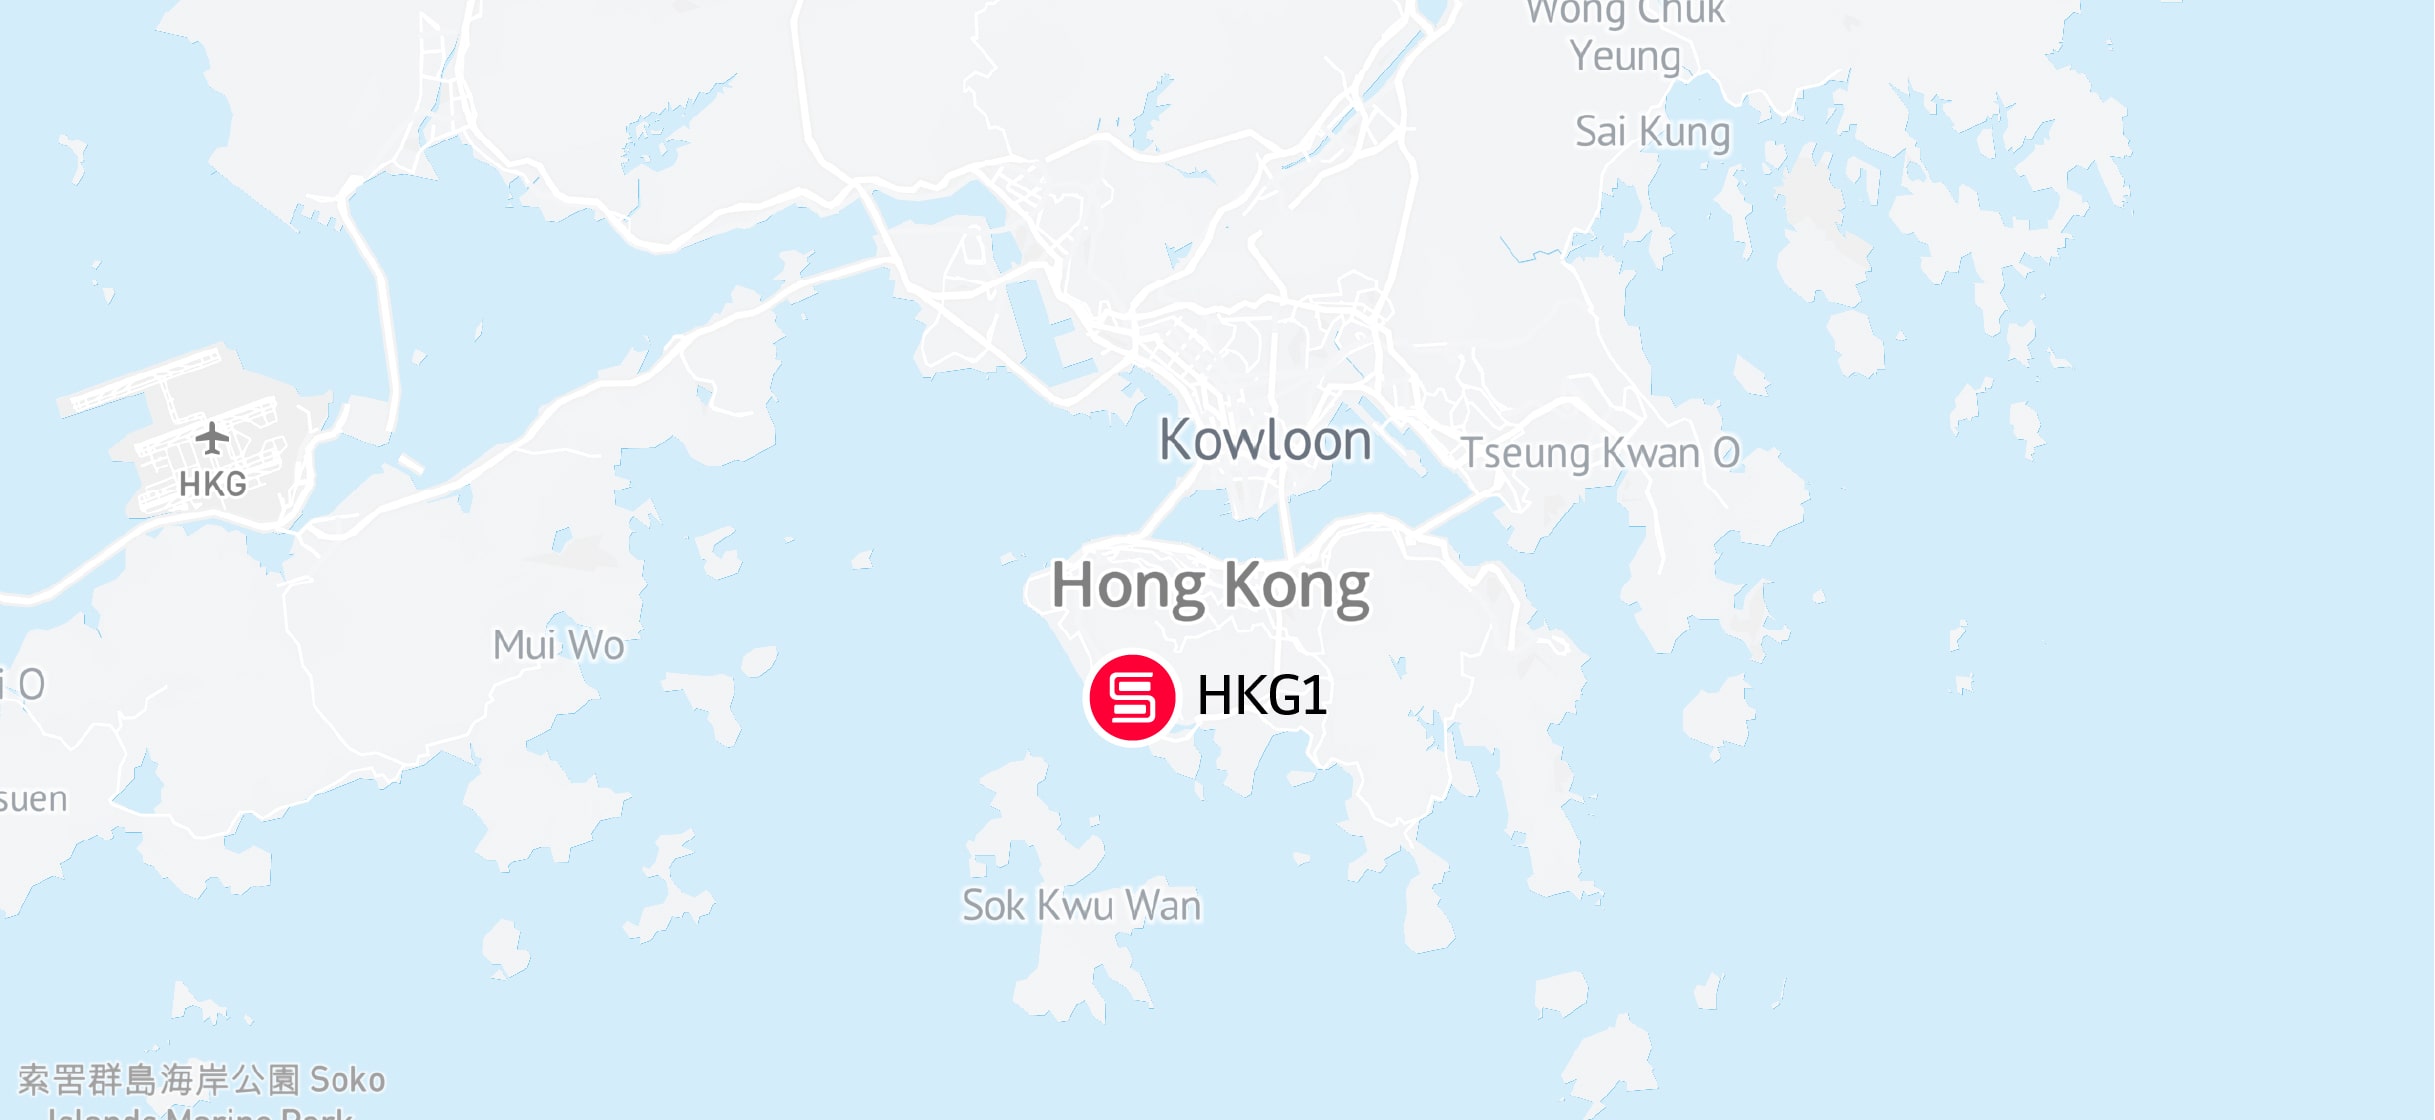 hong kong location